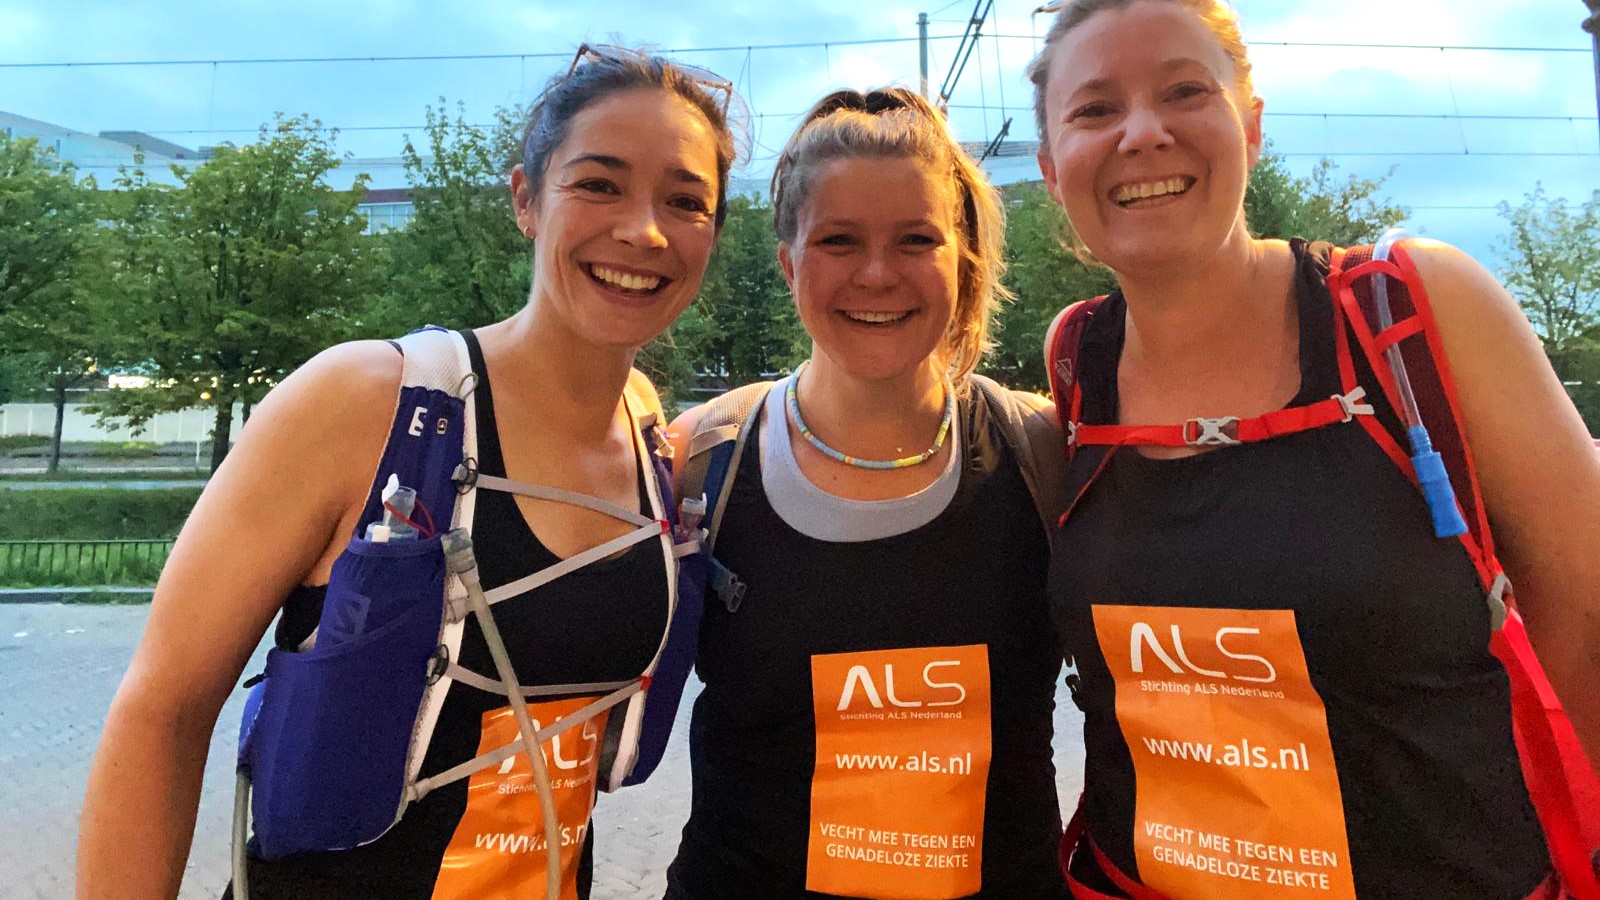 Organiseer een themarun waarbij je mensen laat sponsoren voor ALS